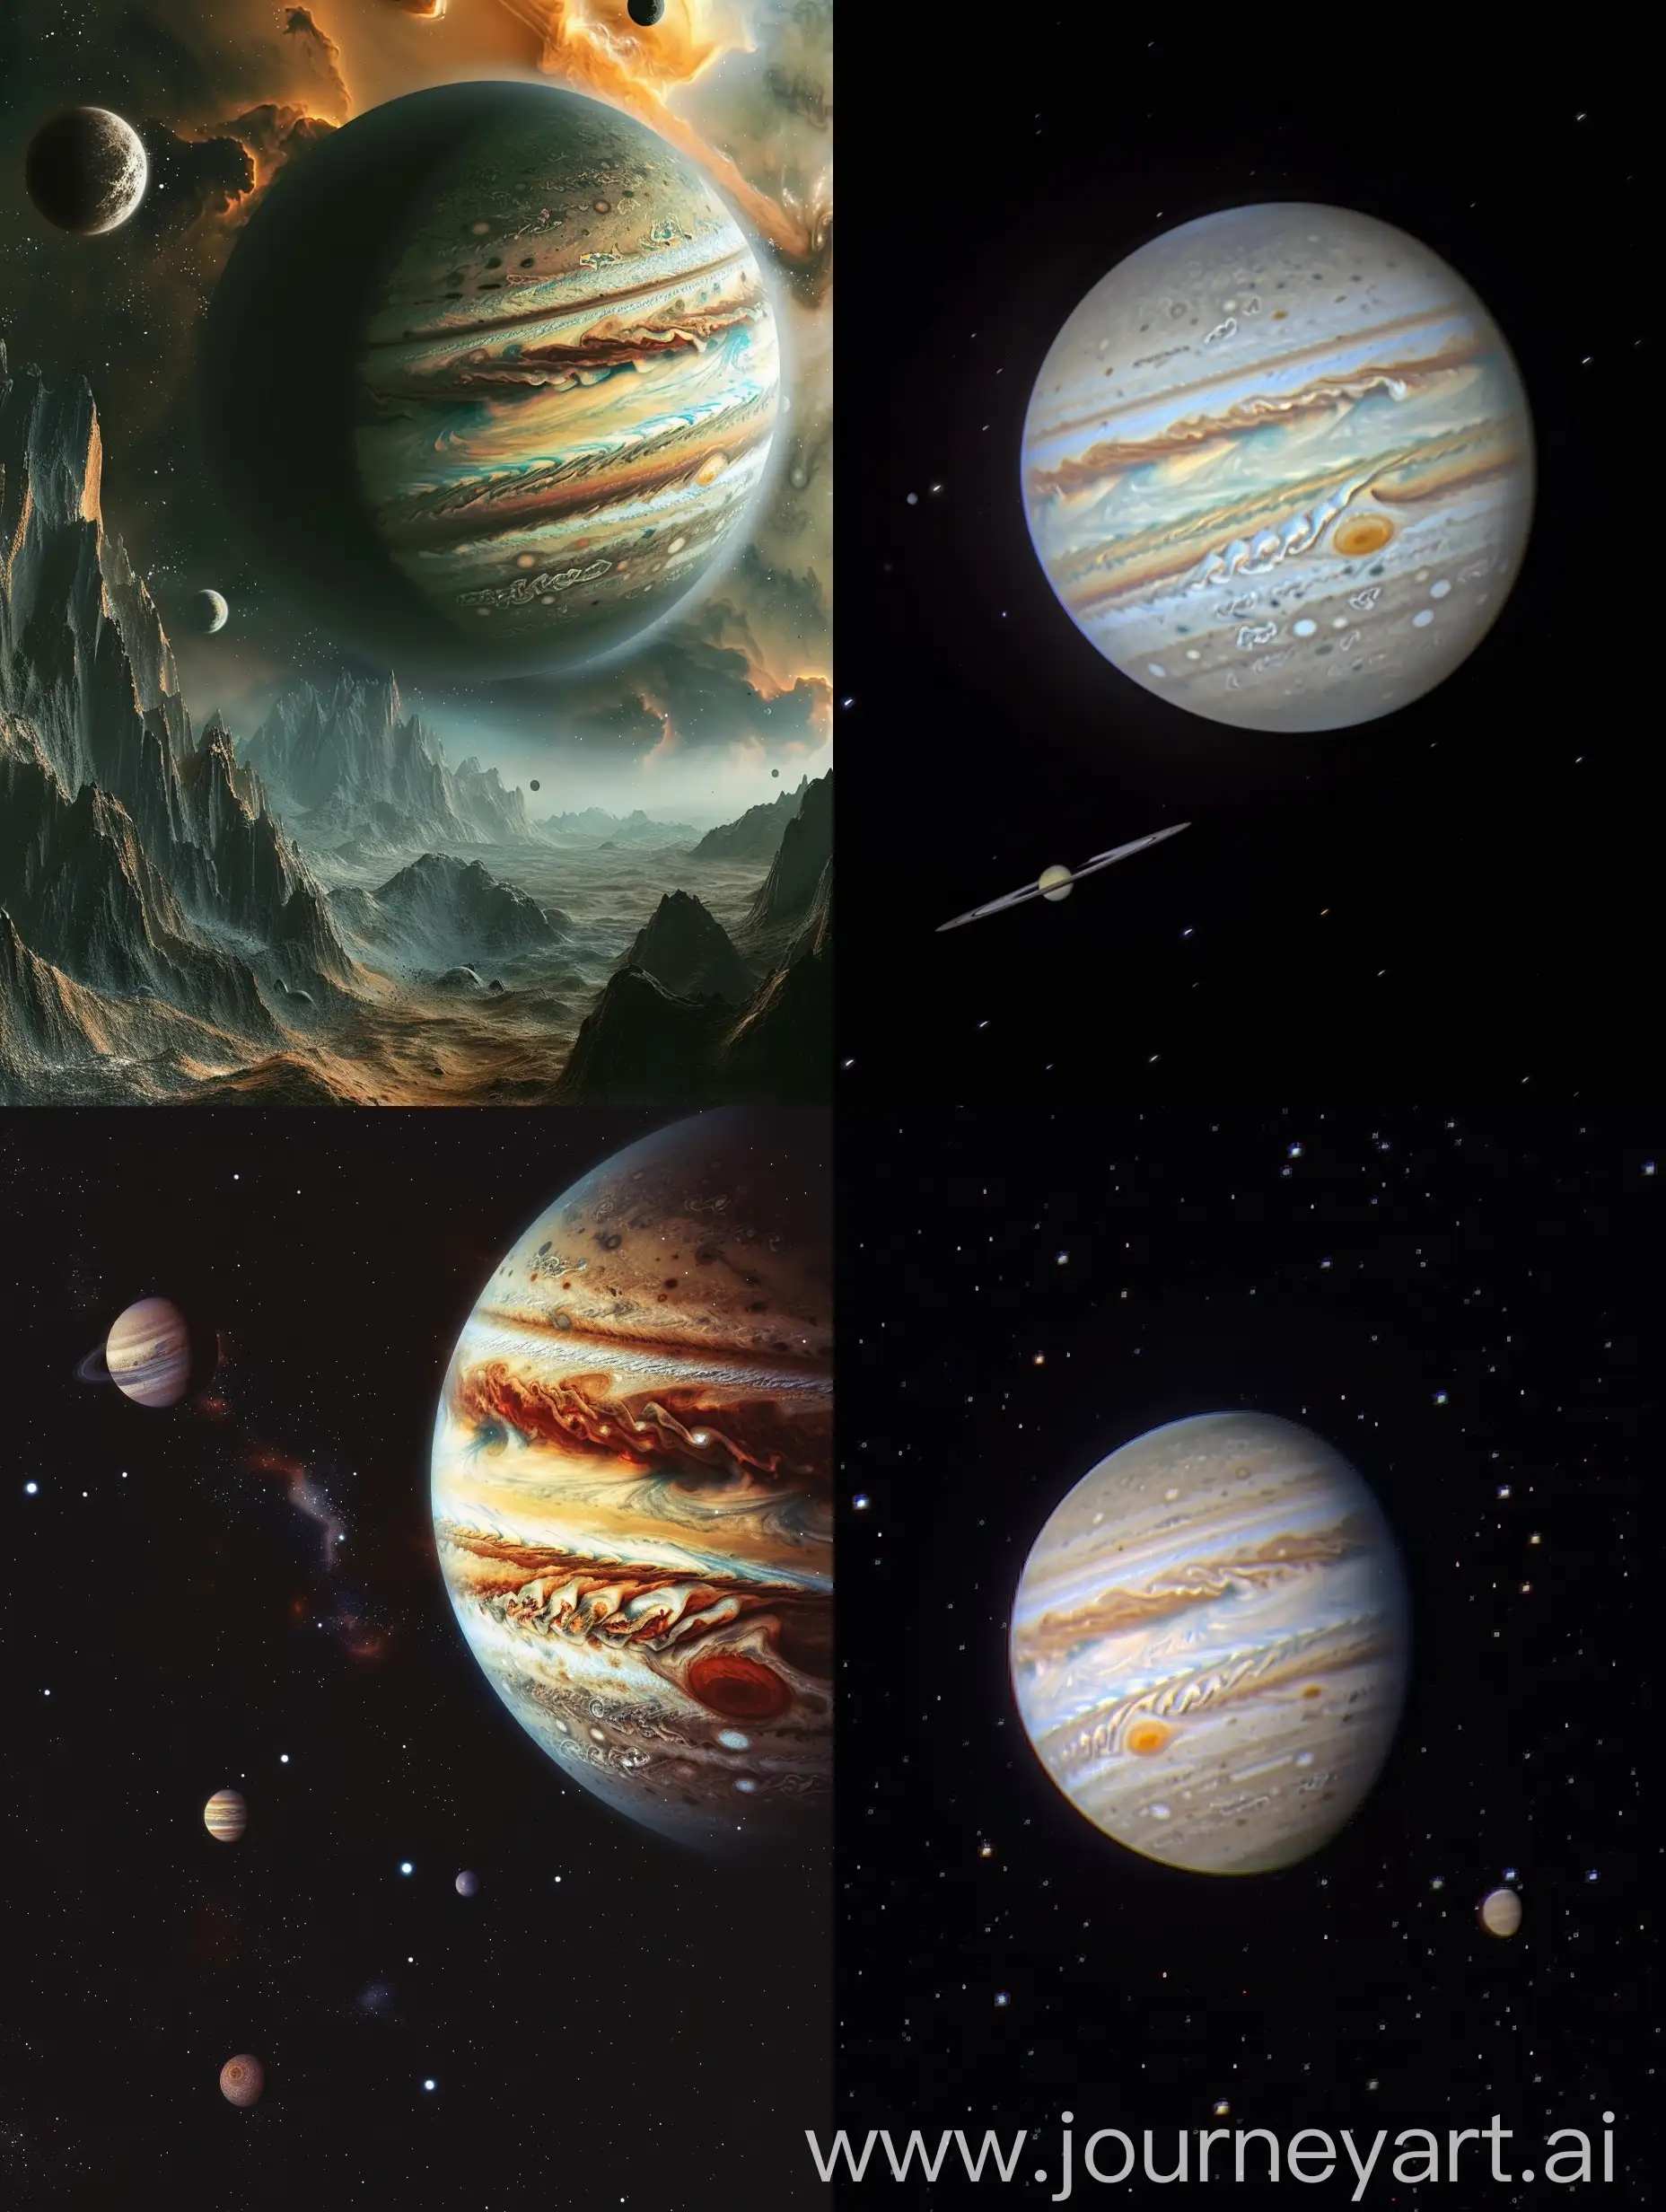 Jupiter and Uranus are nearby